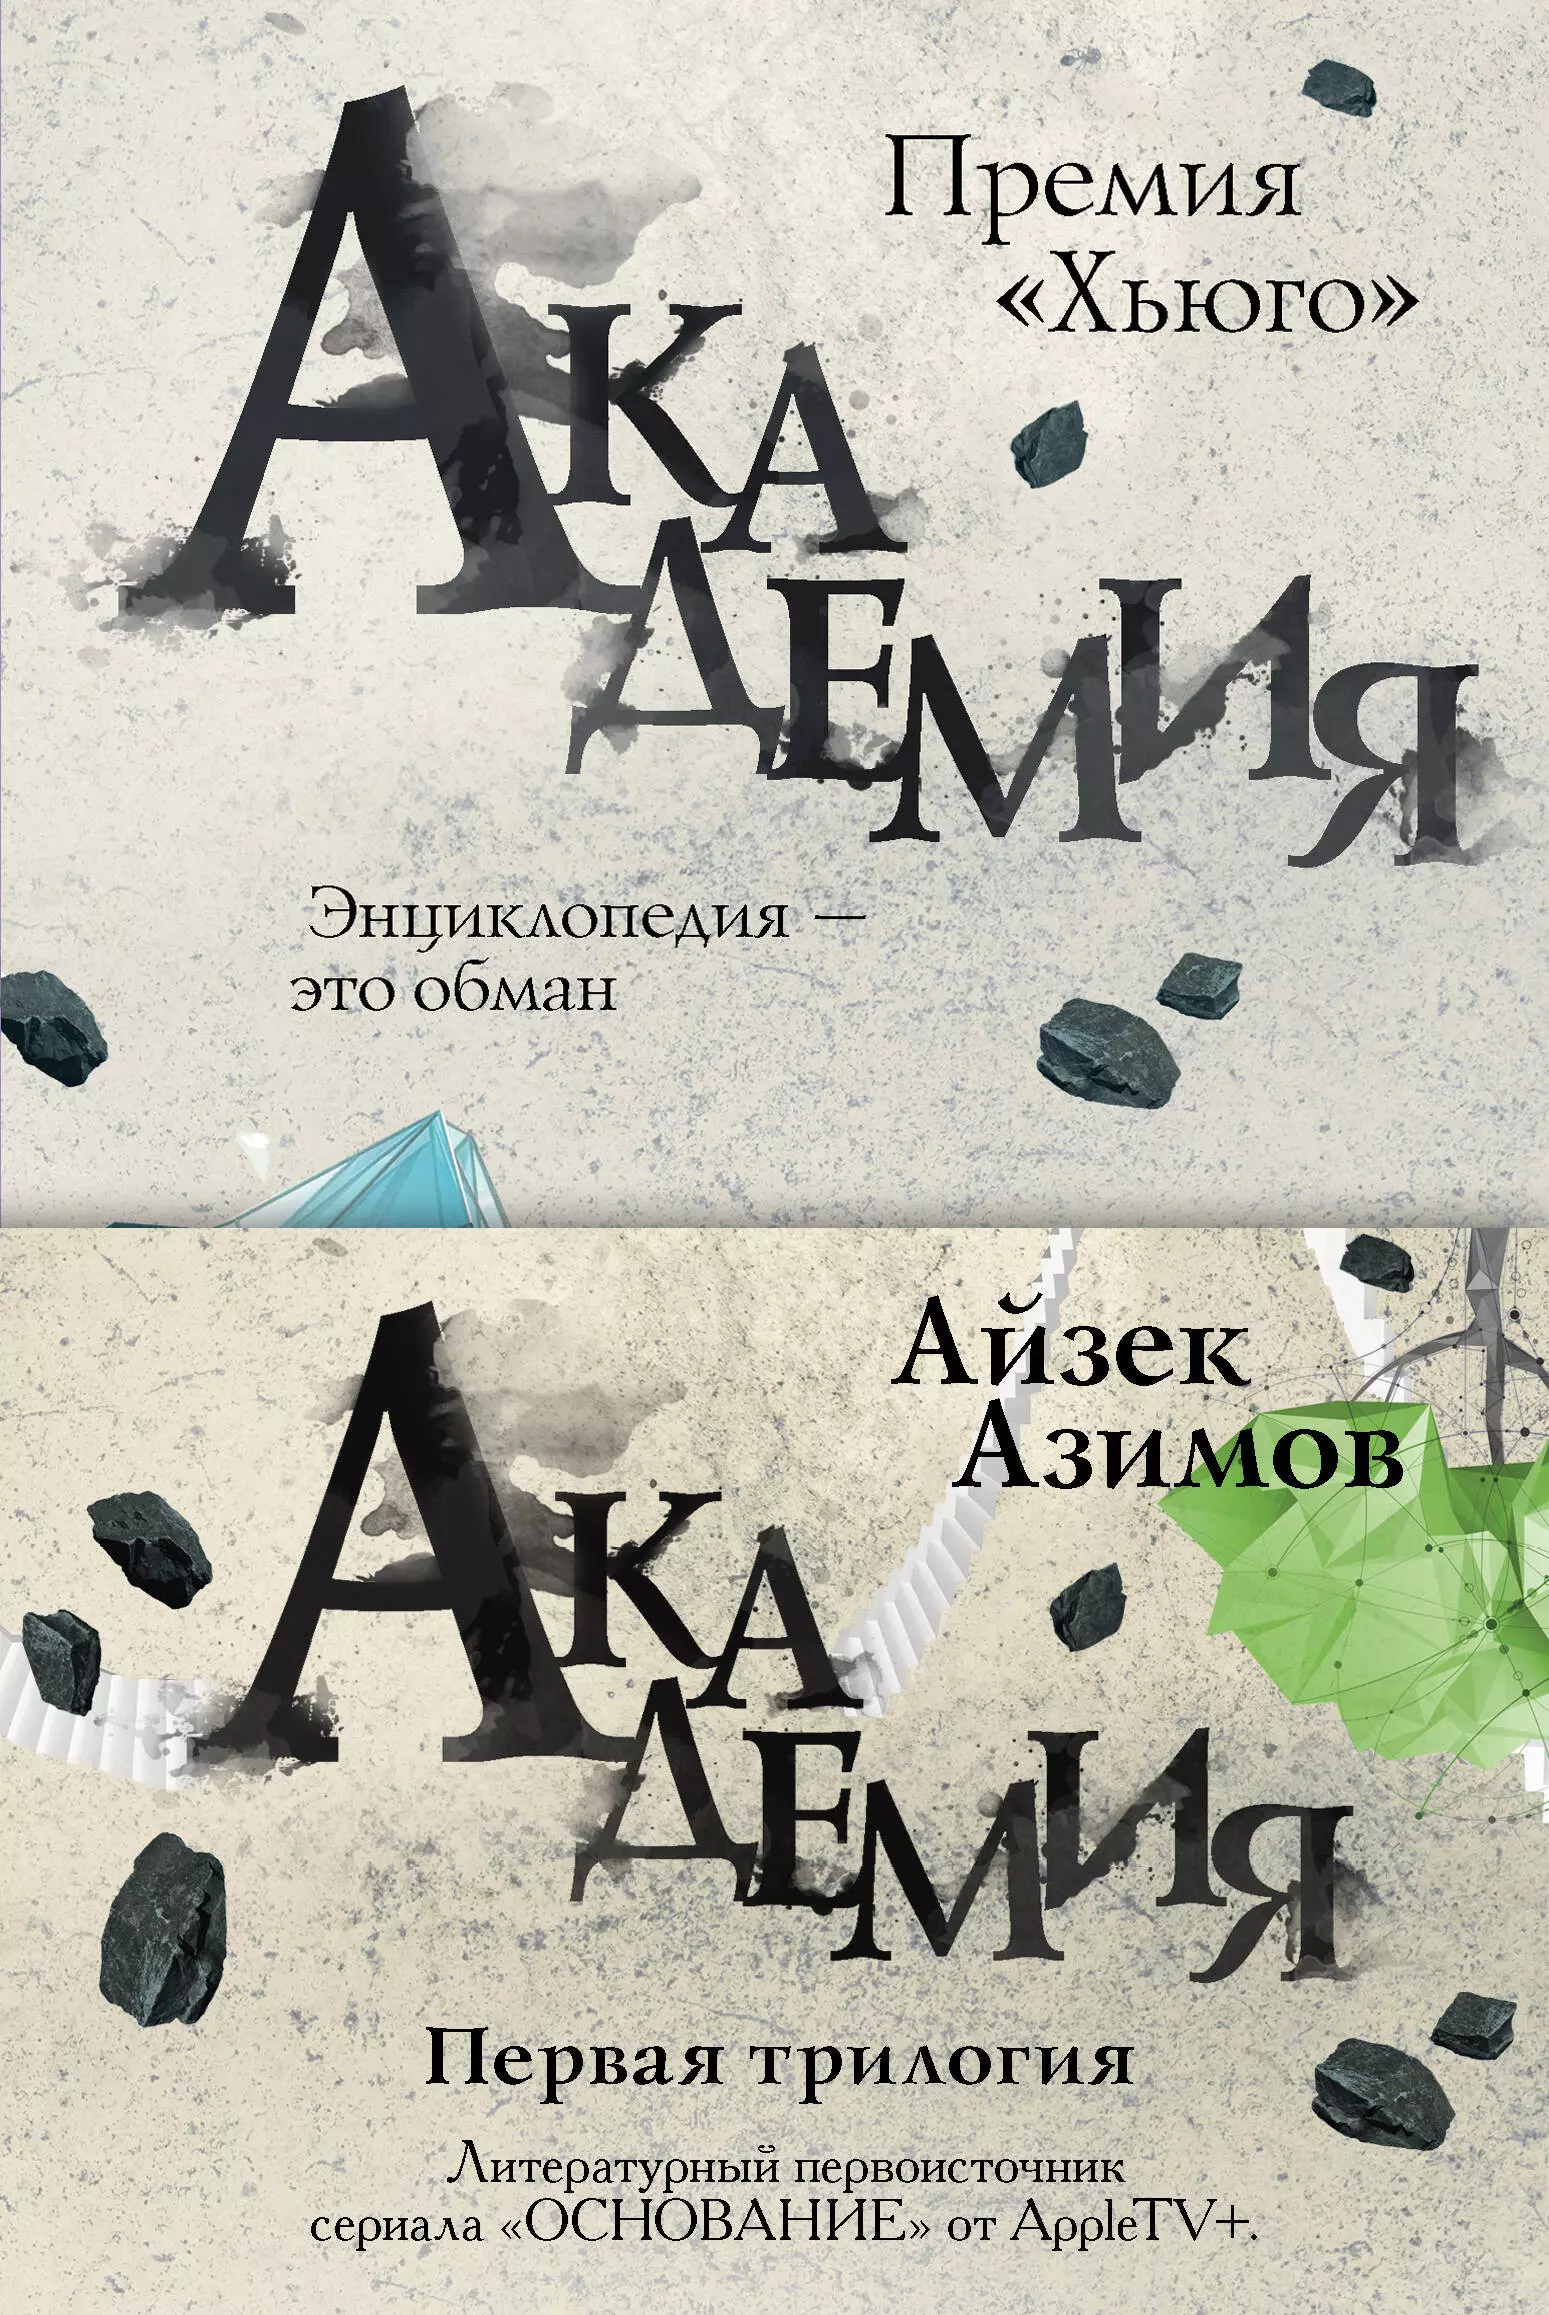 Азимов Айзек - Академия. Первая трилогия (комплект из трех книг)